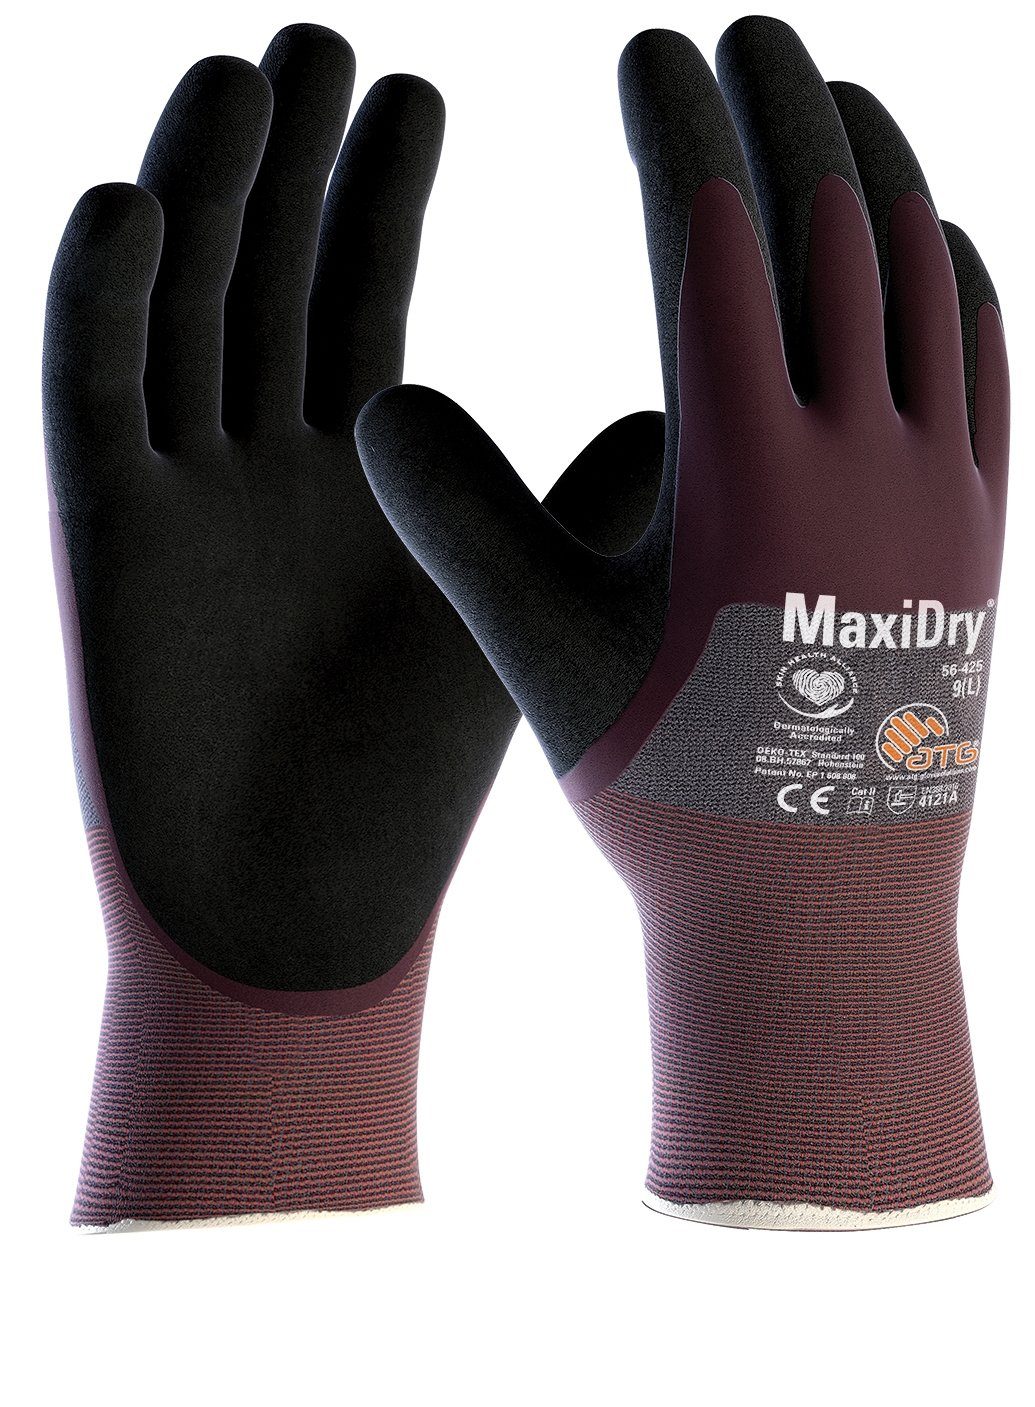 (56-425) 12 beschichtet 3/4 ATG "MaxiDry®", Nitril-Handschuhe Paar